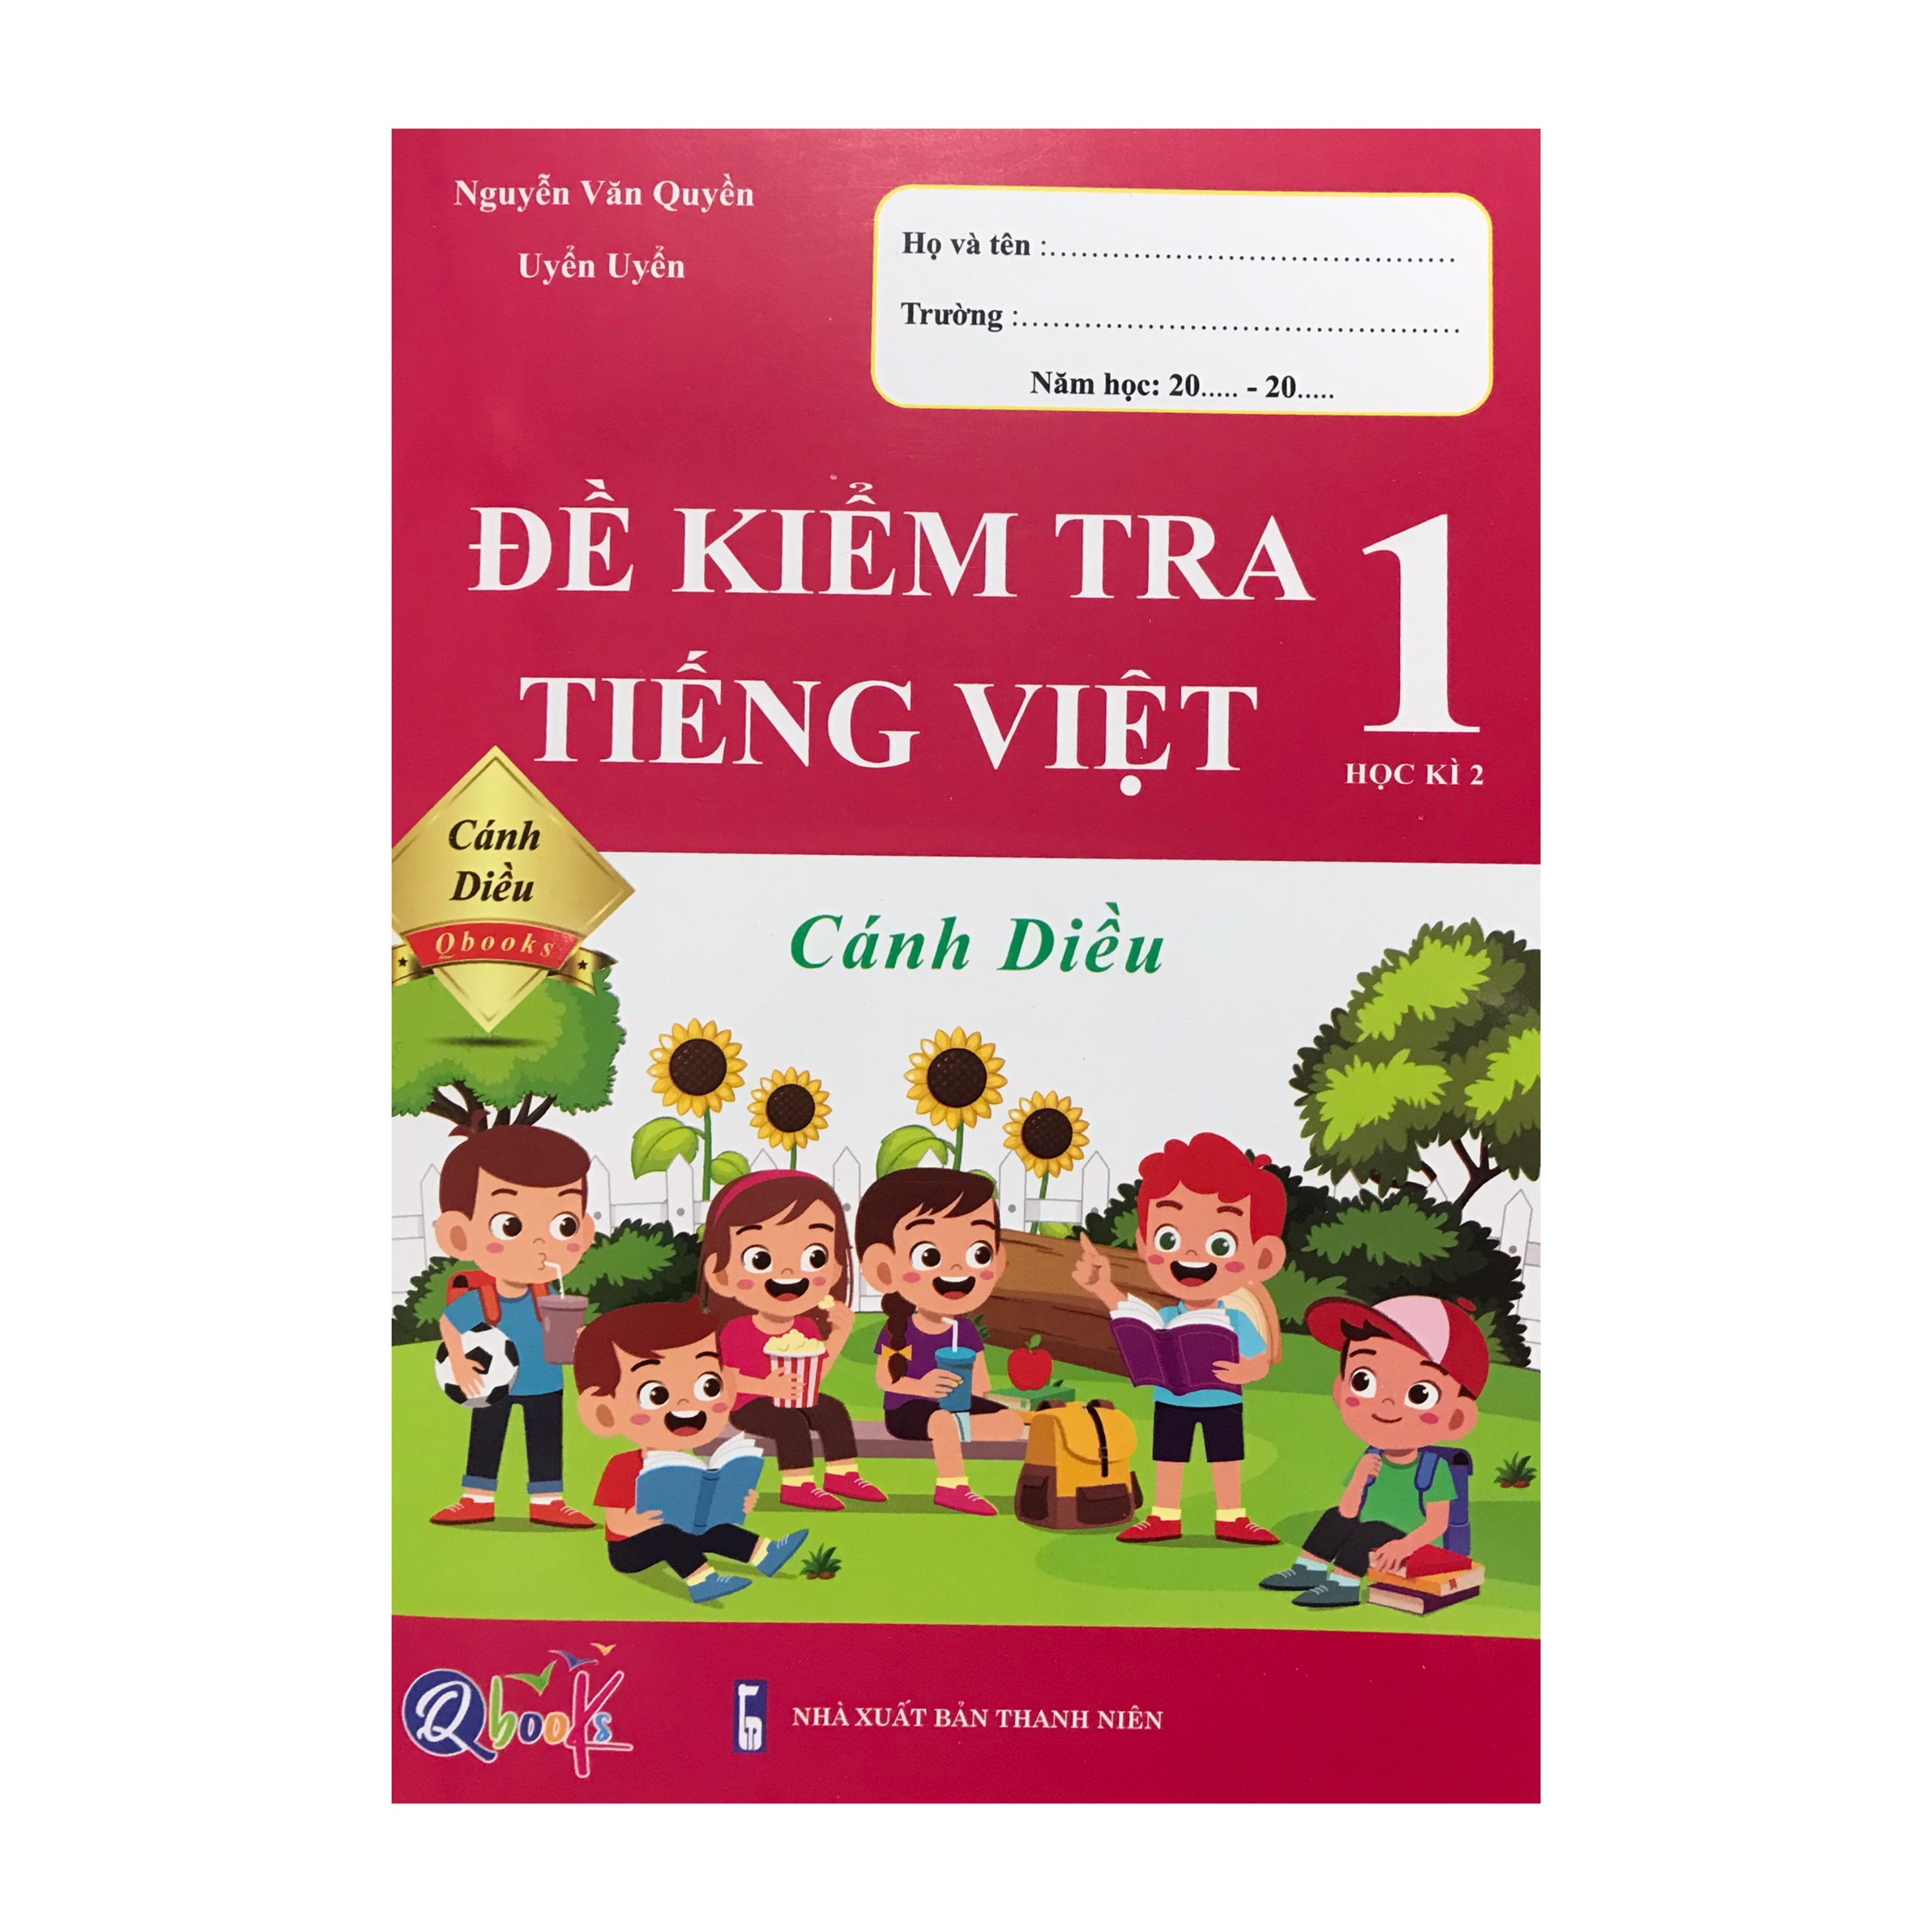 Đề kiểm tra Tiếng Việt 1 học kì 2 ( Cánh diều )